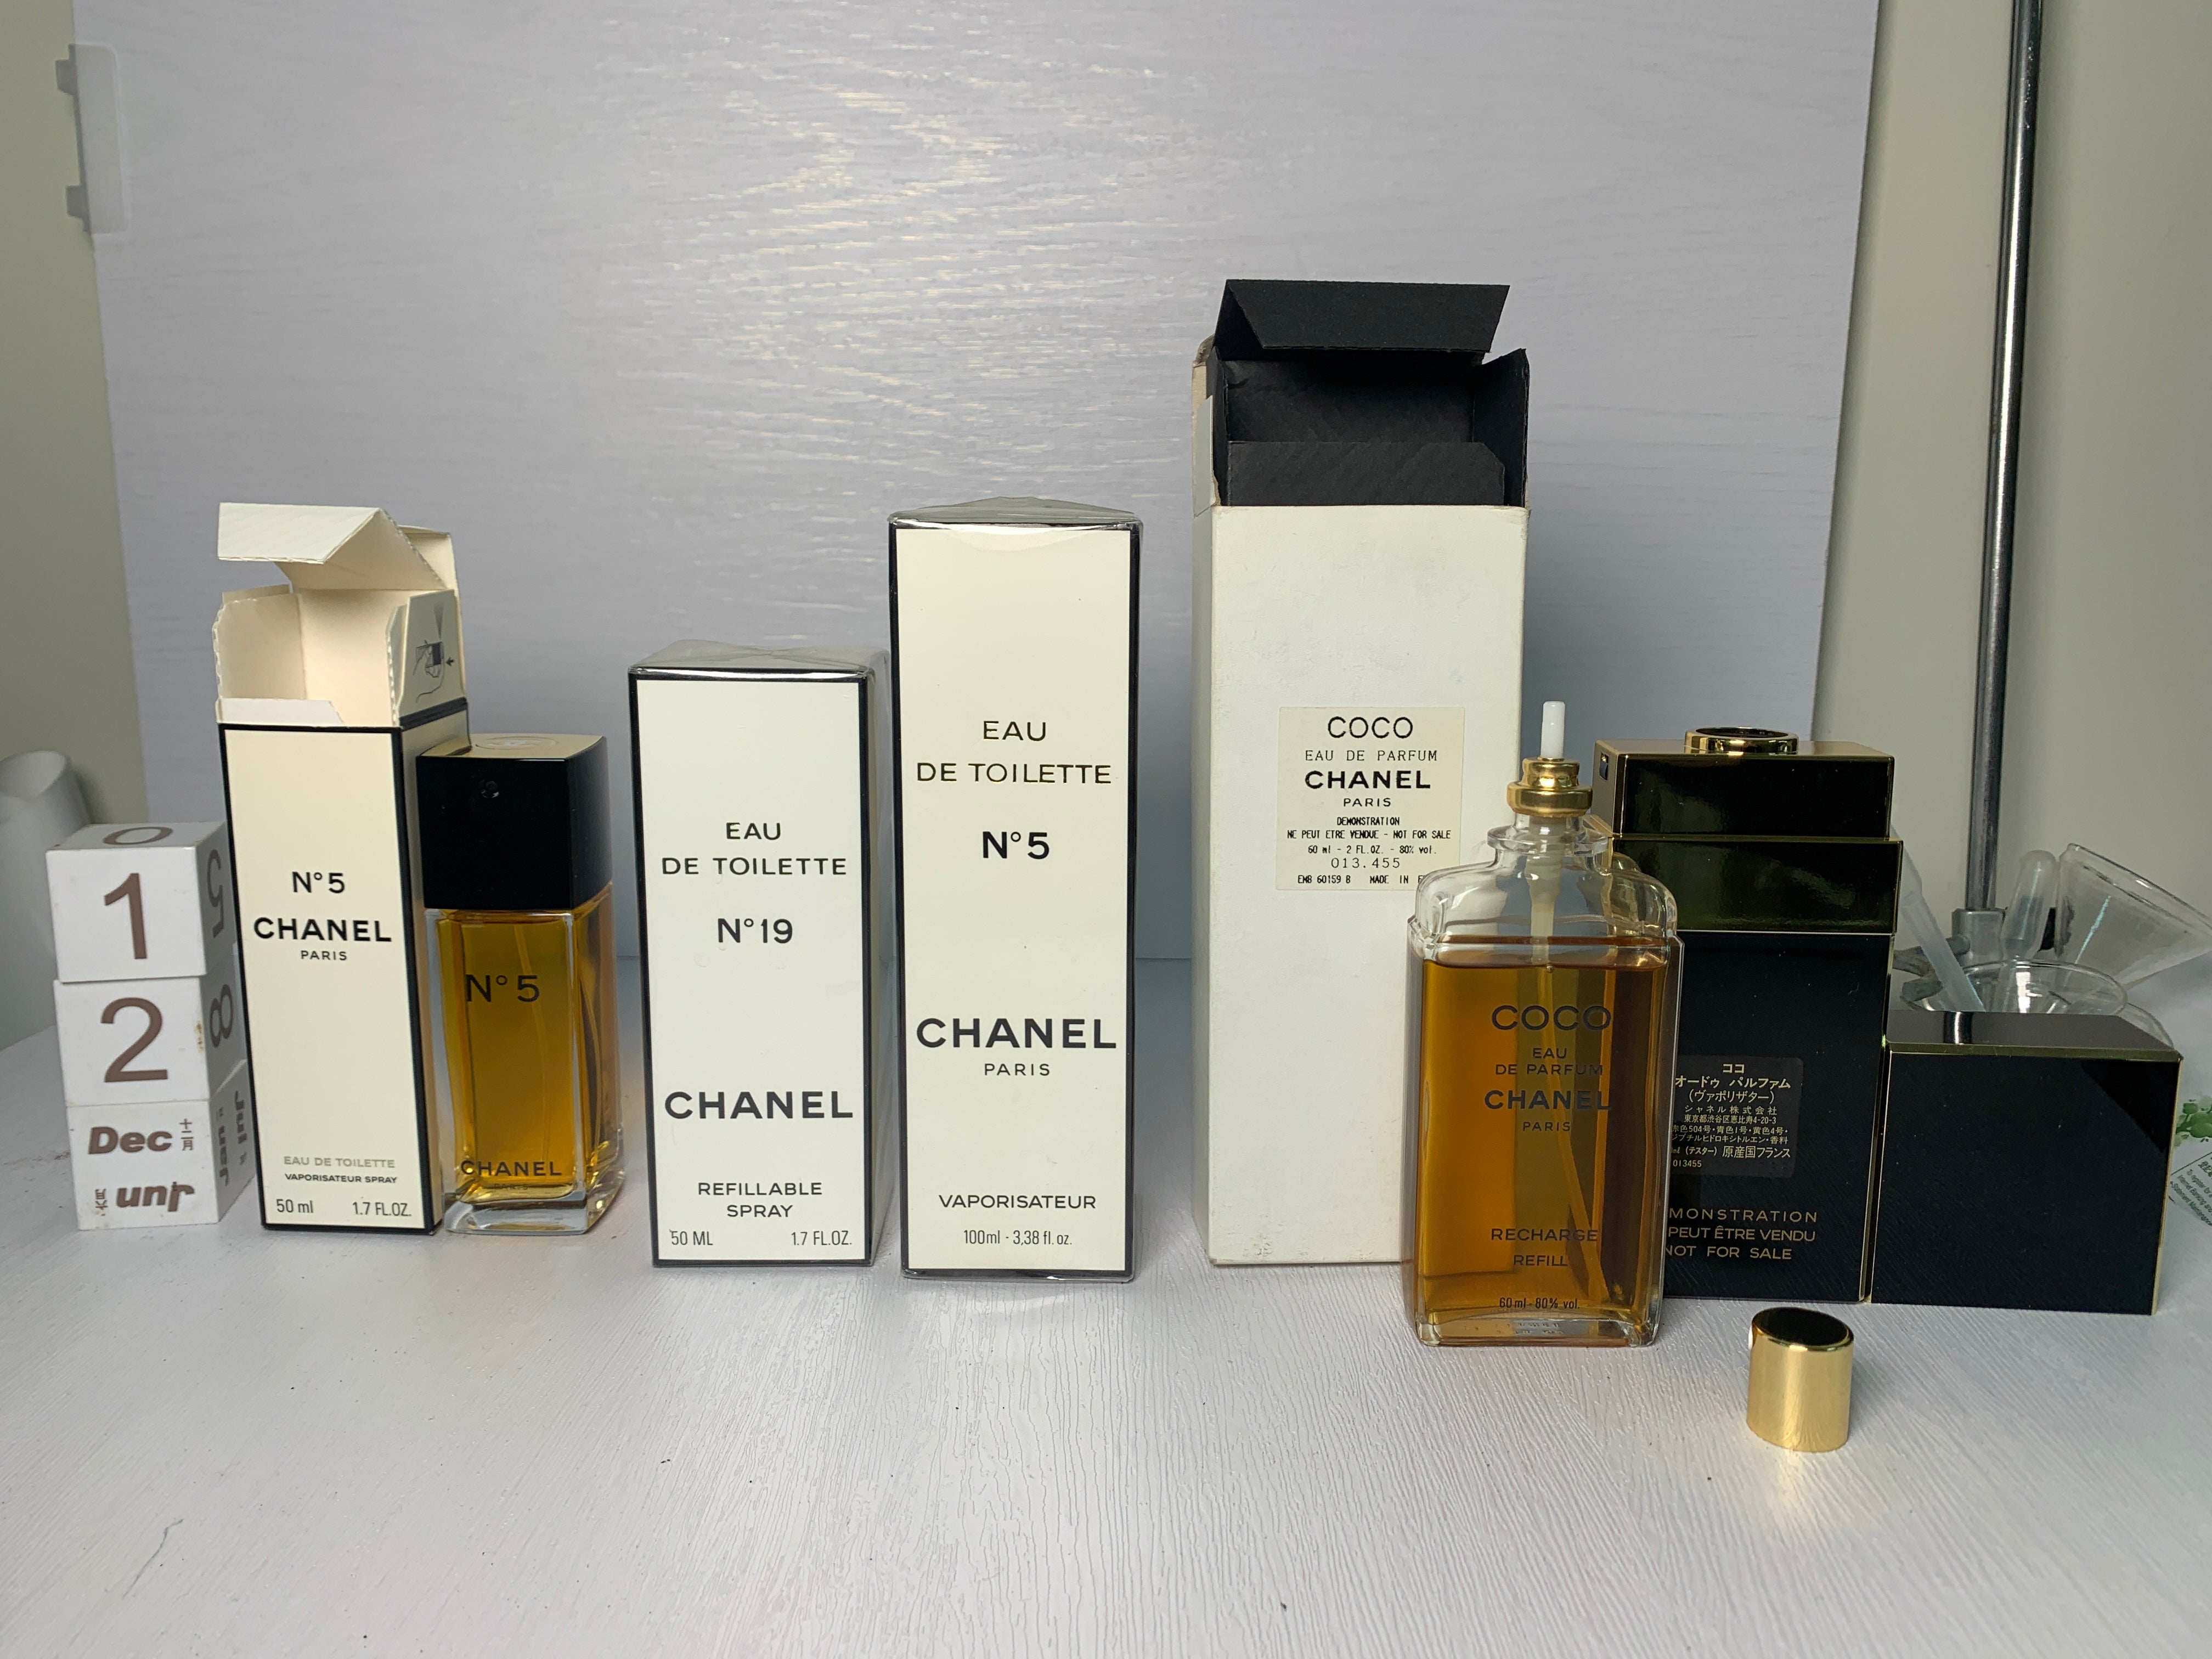 Chanel Coco Eau de Parfum Spray 1.7 oz